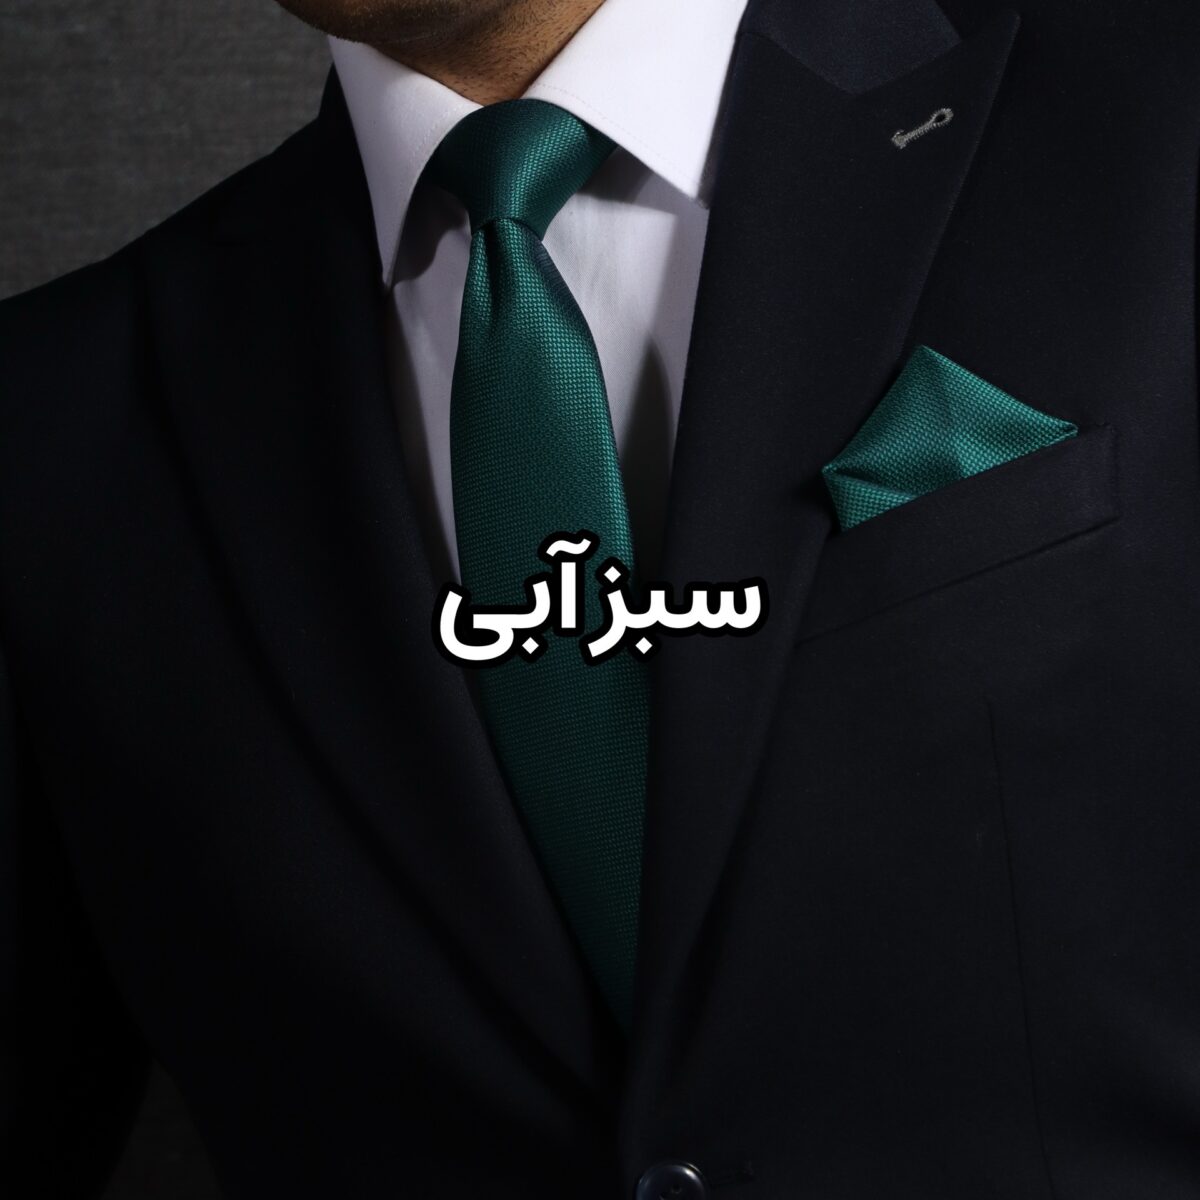 ست کراوات و پوشت سبز کله غازی ساده NESEN طرح آکسفورد PL4